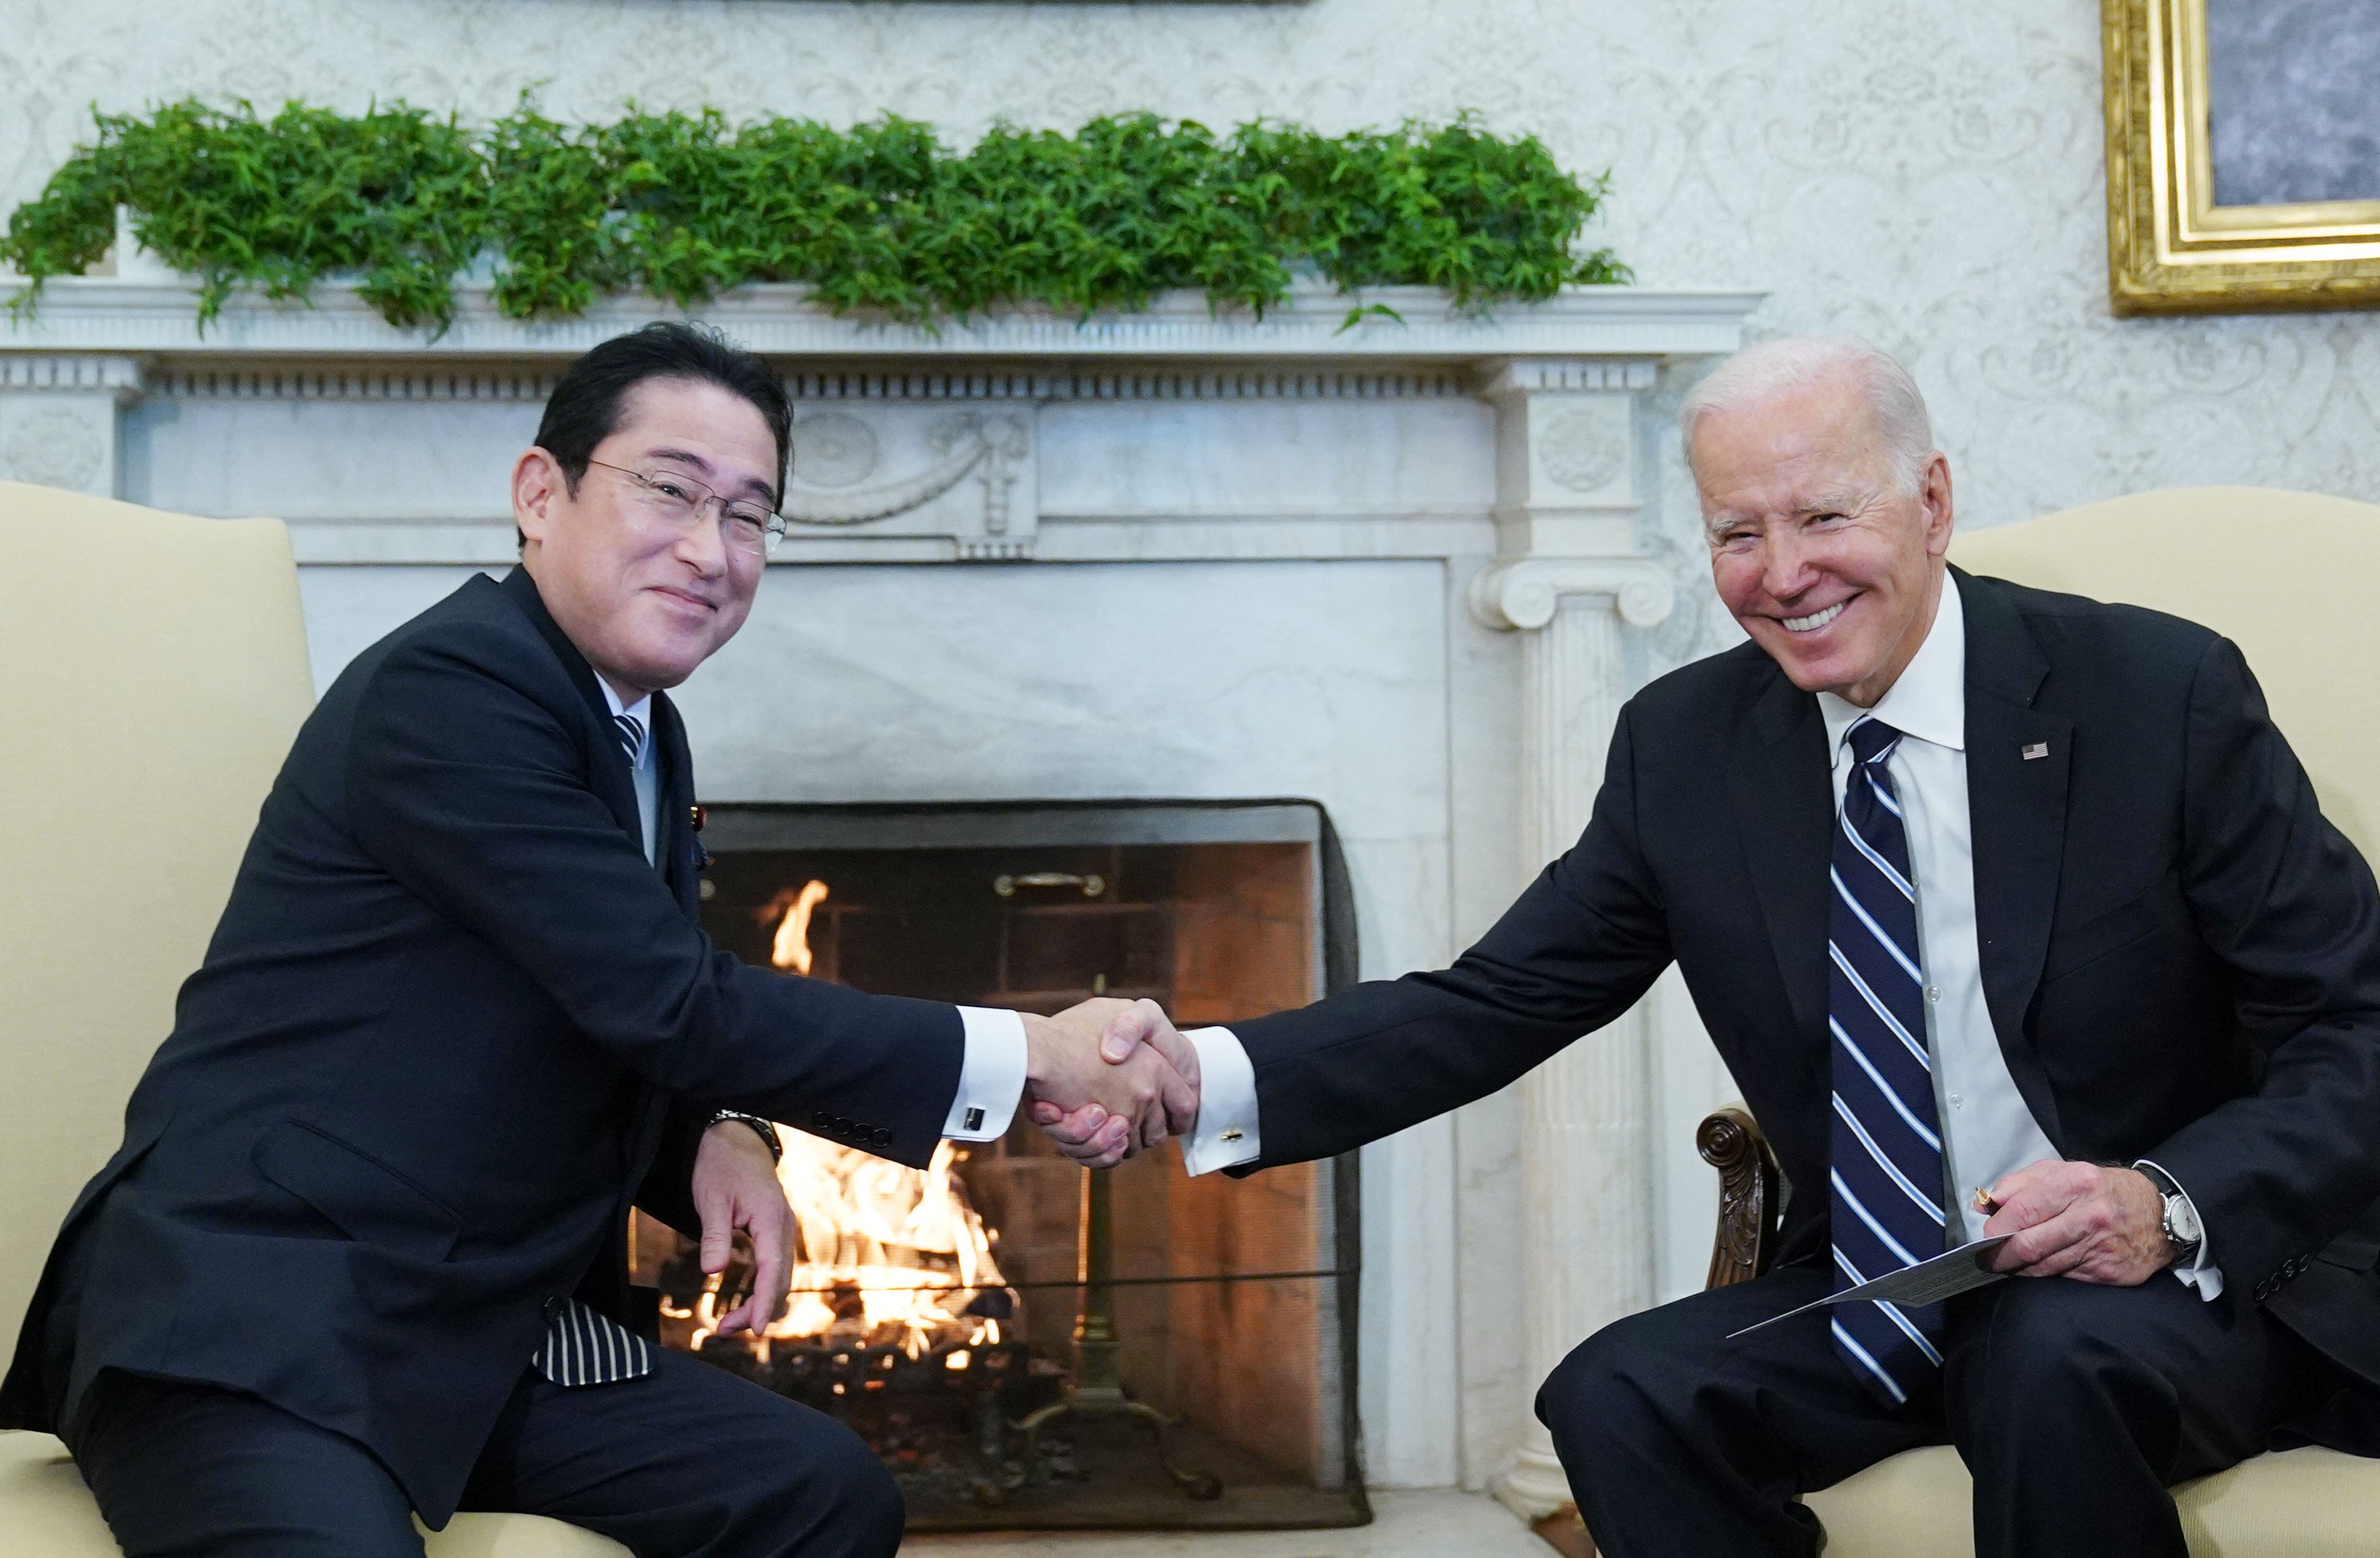 El presidente de los Estados Unidos, Joe Biden, le da la mano al primer ministro de Japón, Fumio Kishida, durante una reunión en la Oficina Oval de la Casa Blanca en Washington, DC.